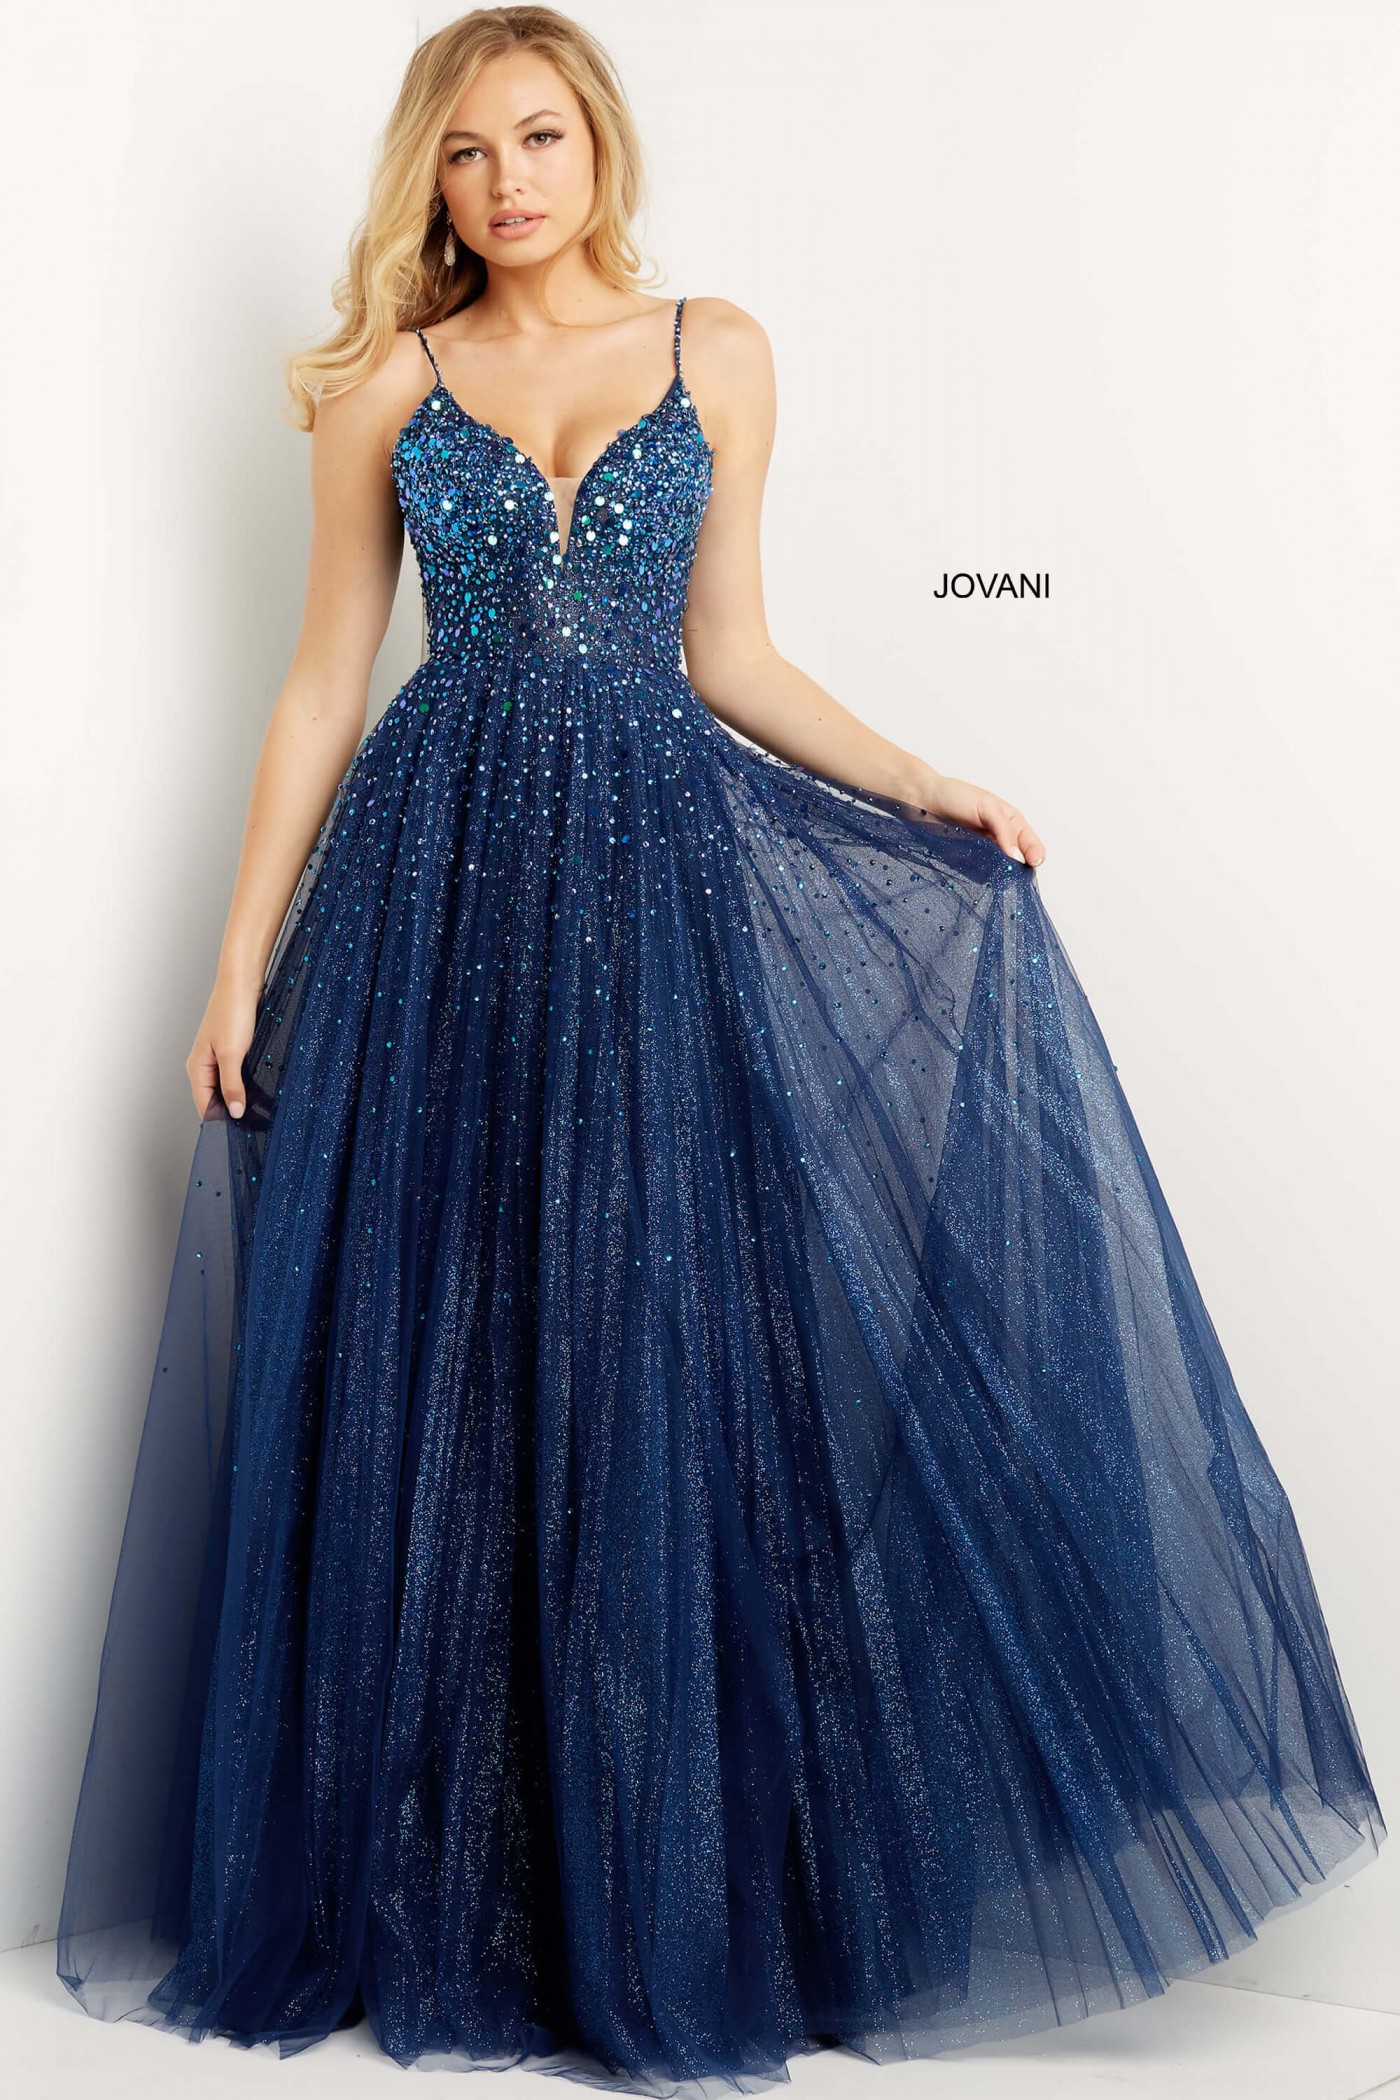 Jovani 08408 Navy A-Line Glitter Prom Dress